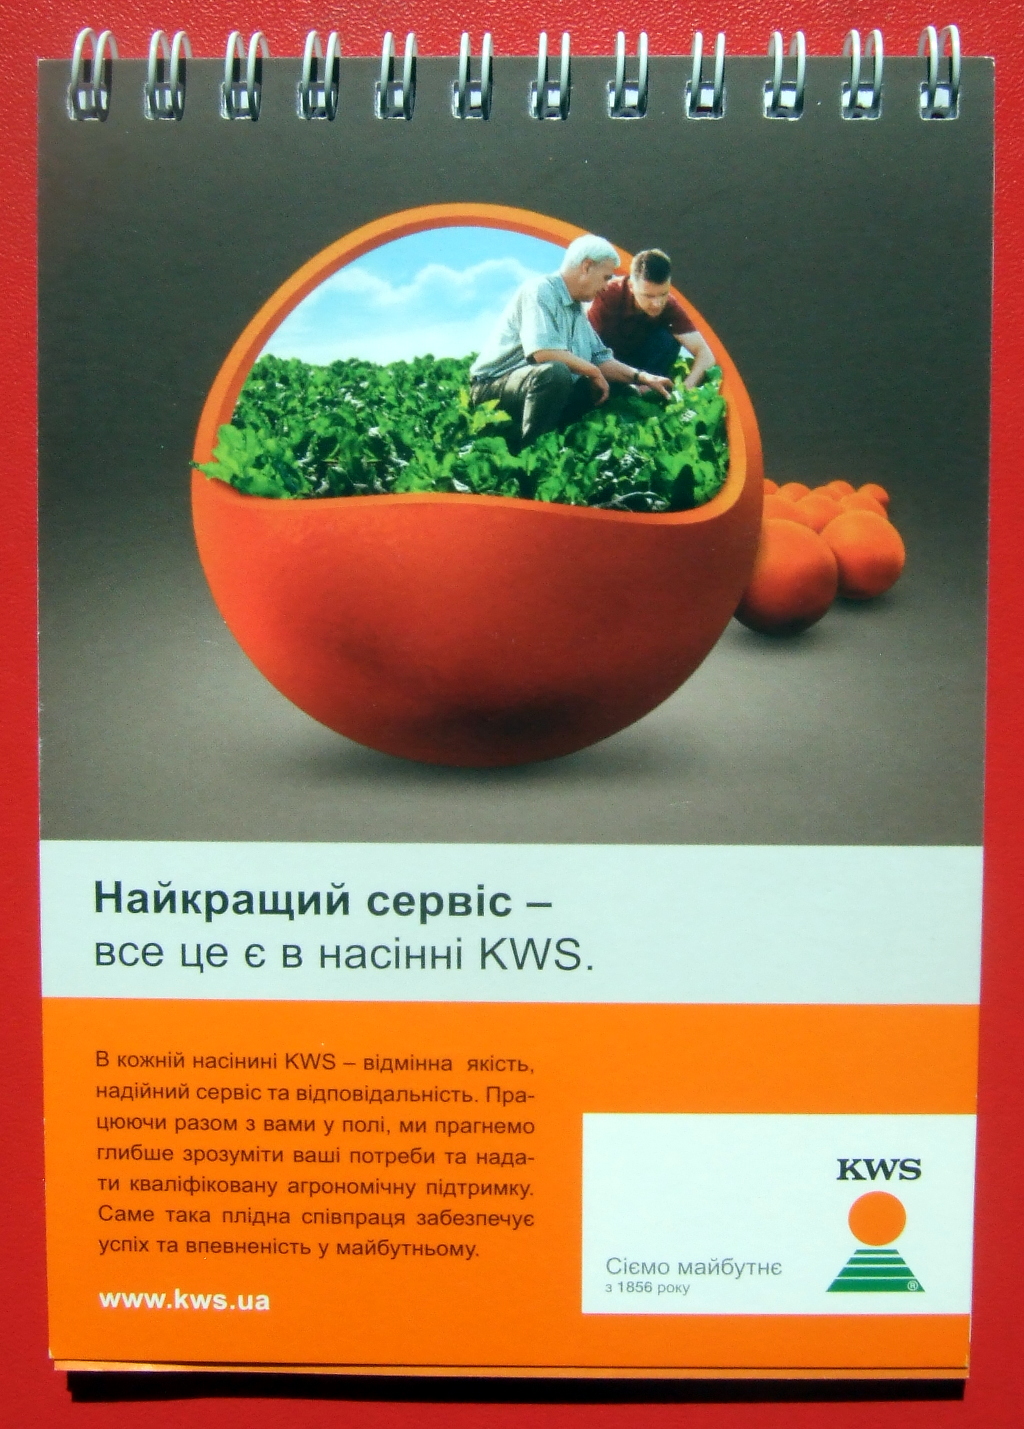 Печать блокнотов «KWS». Полиграфия типографии Макрос, изготовление блокнотов, спецификация 952995-1